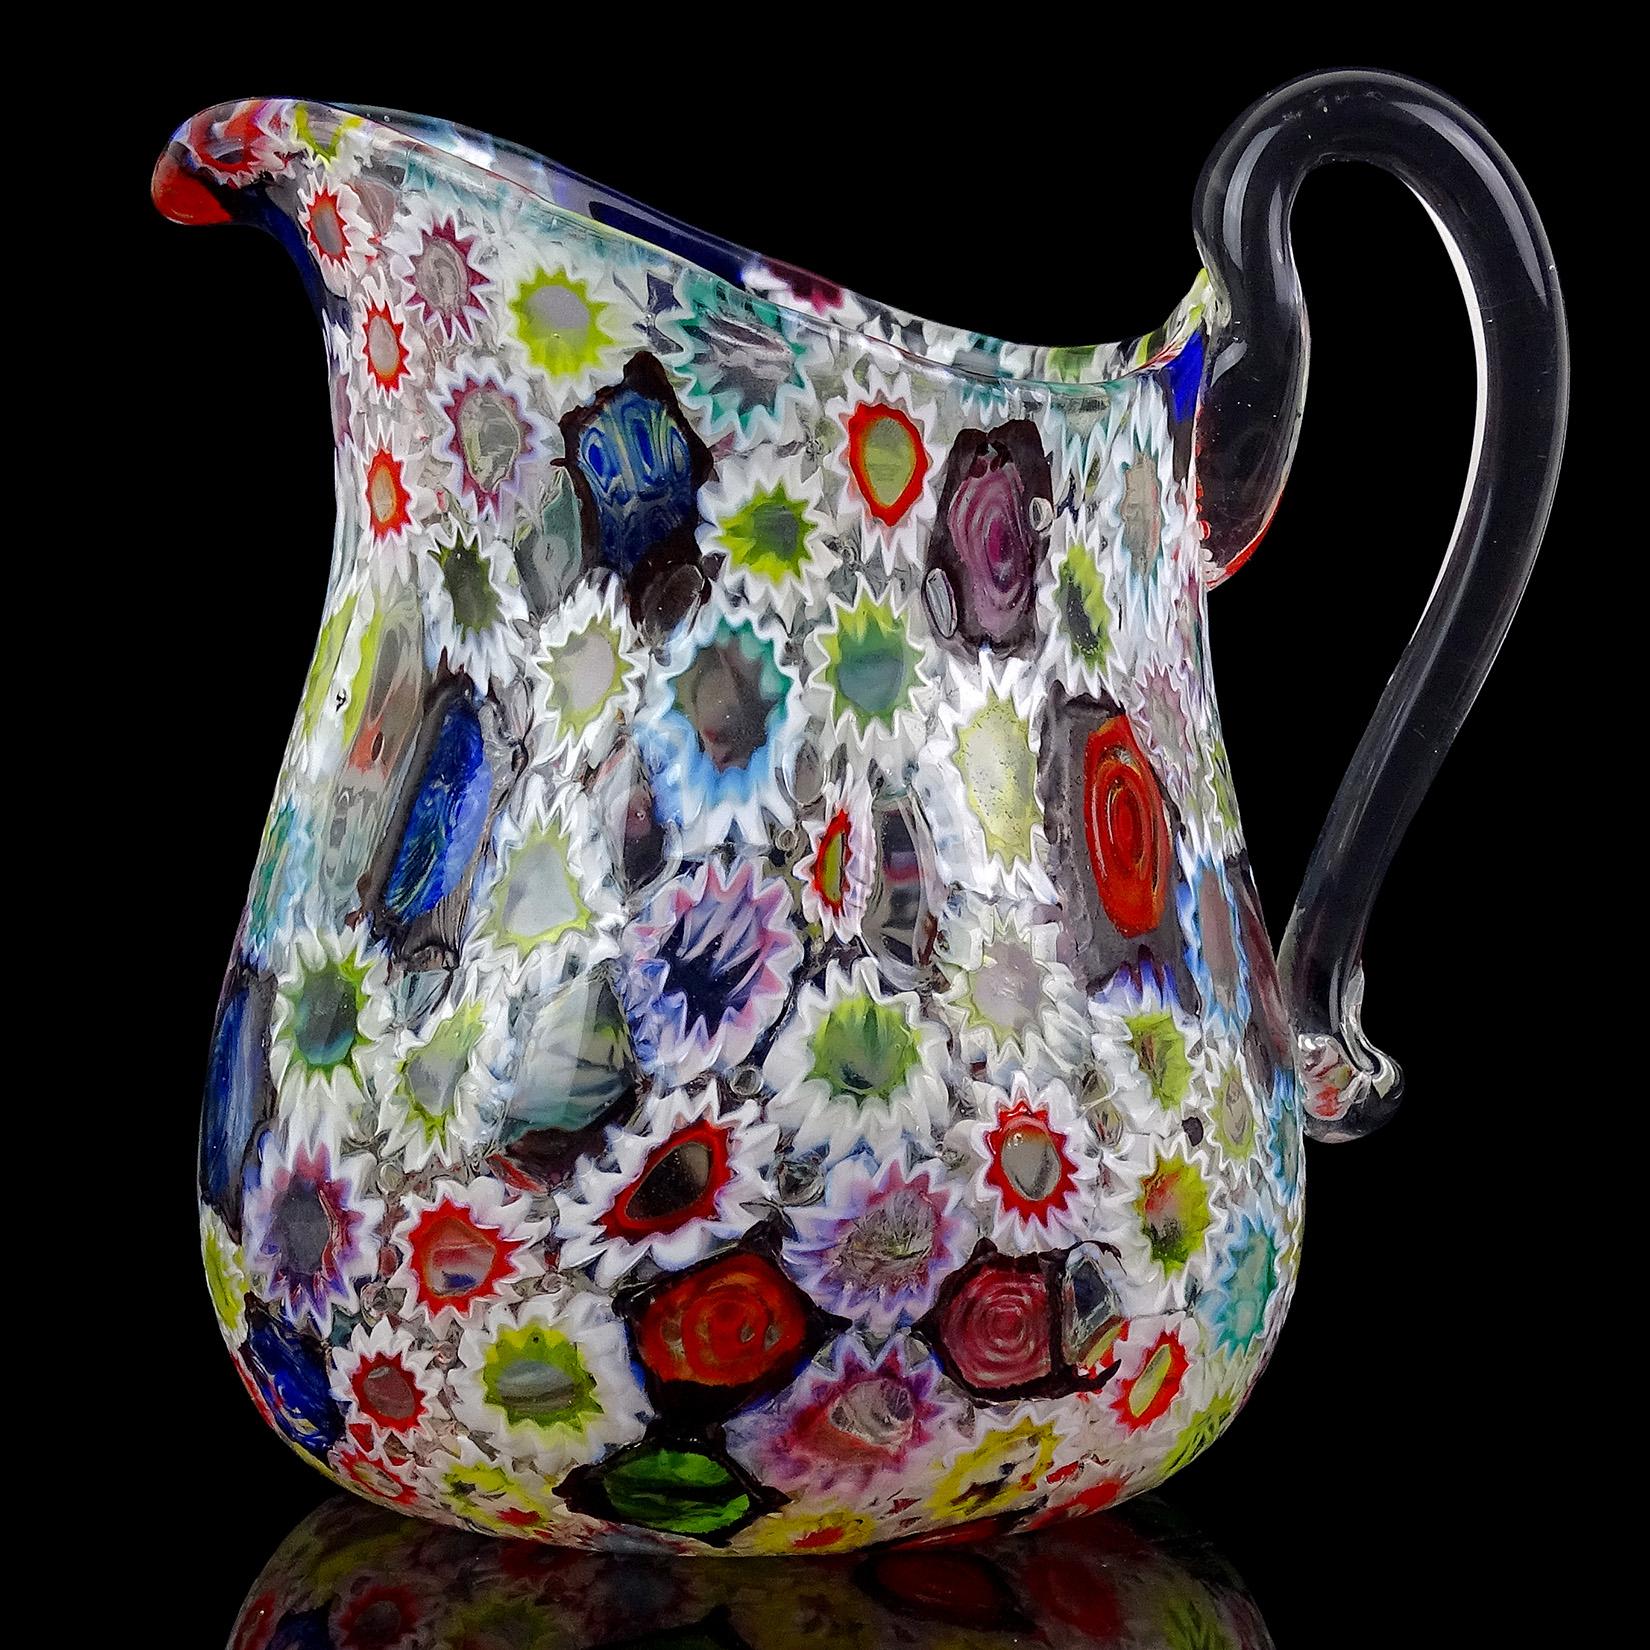 Schöne Vintage Murano mundgeblasen mehrfarbige Millefiori Blume und Stern Mosaik italienische Kunst Glas Krug / Vase. Dokumentiert für die Firma Fratelli Toso. Der Krug hat eine große Öffnung, mit dicken Klarglas appliziert Griff auf der Seite.